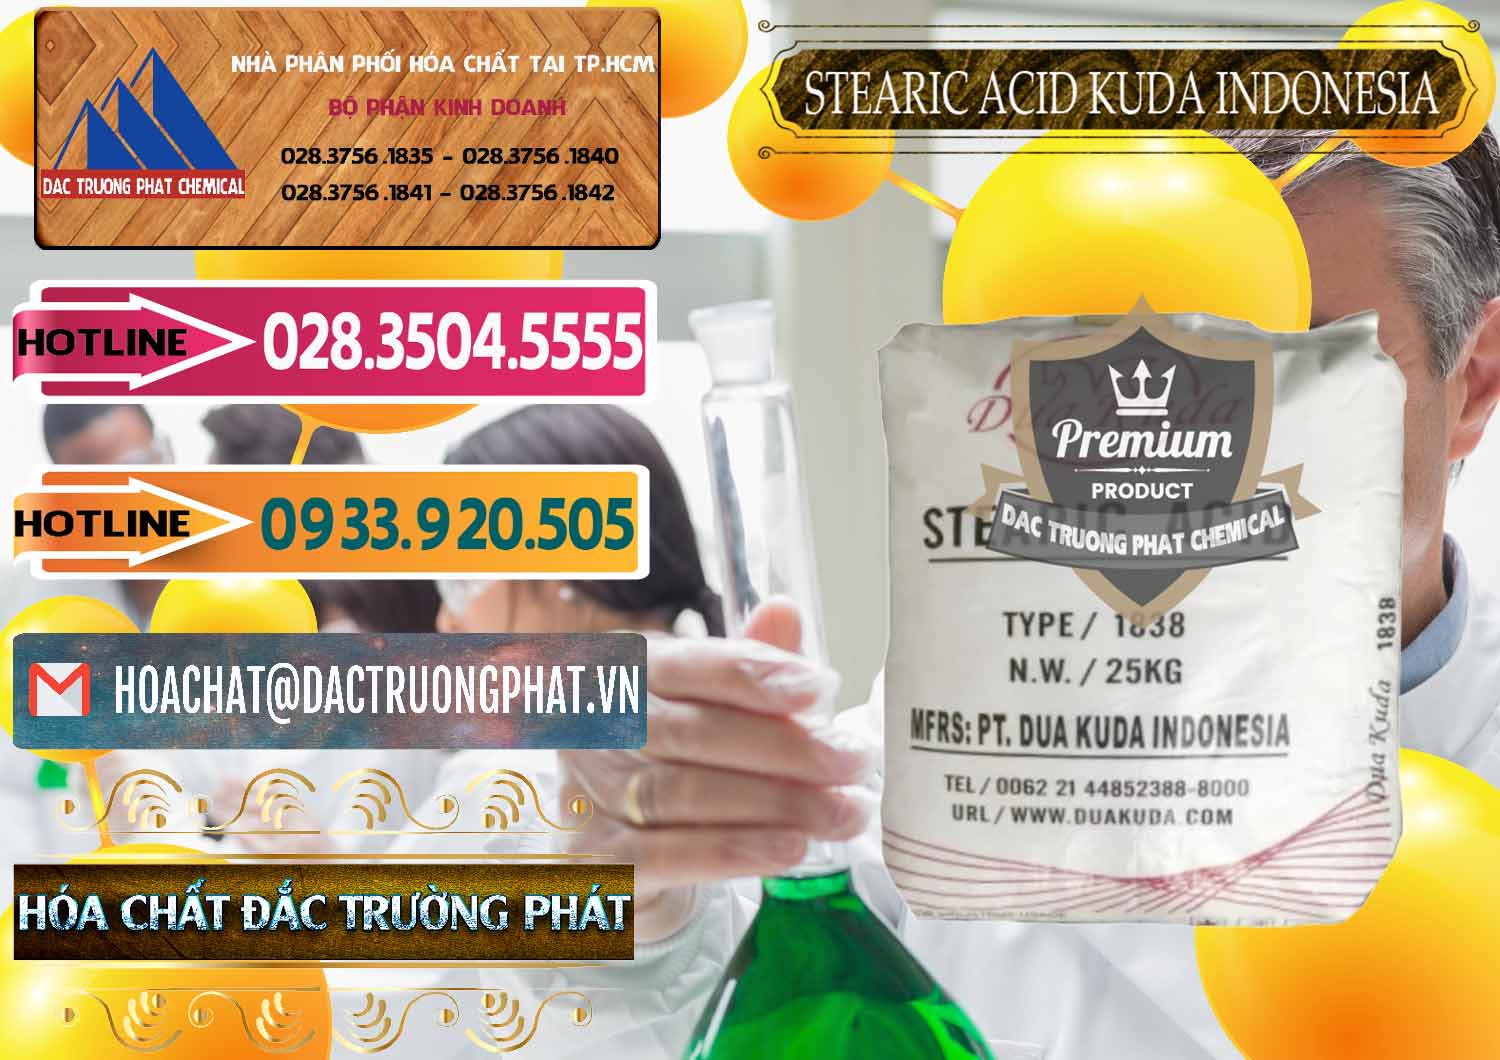 Cty kinh doanh - bán Axit Stearic - Stearic Acid Dua Kuda Indonesia - 0388 - Cty chuyên bán - cung cấp hóa chất tại TP.HCM - dactruongphat.vn